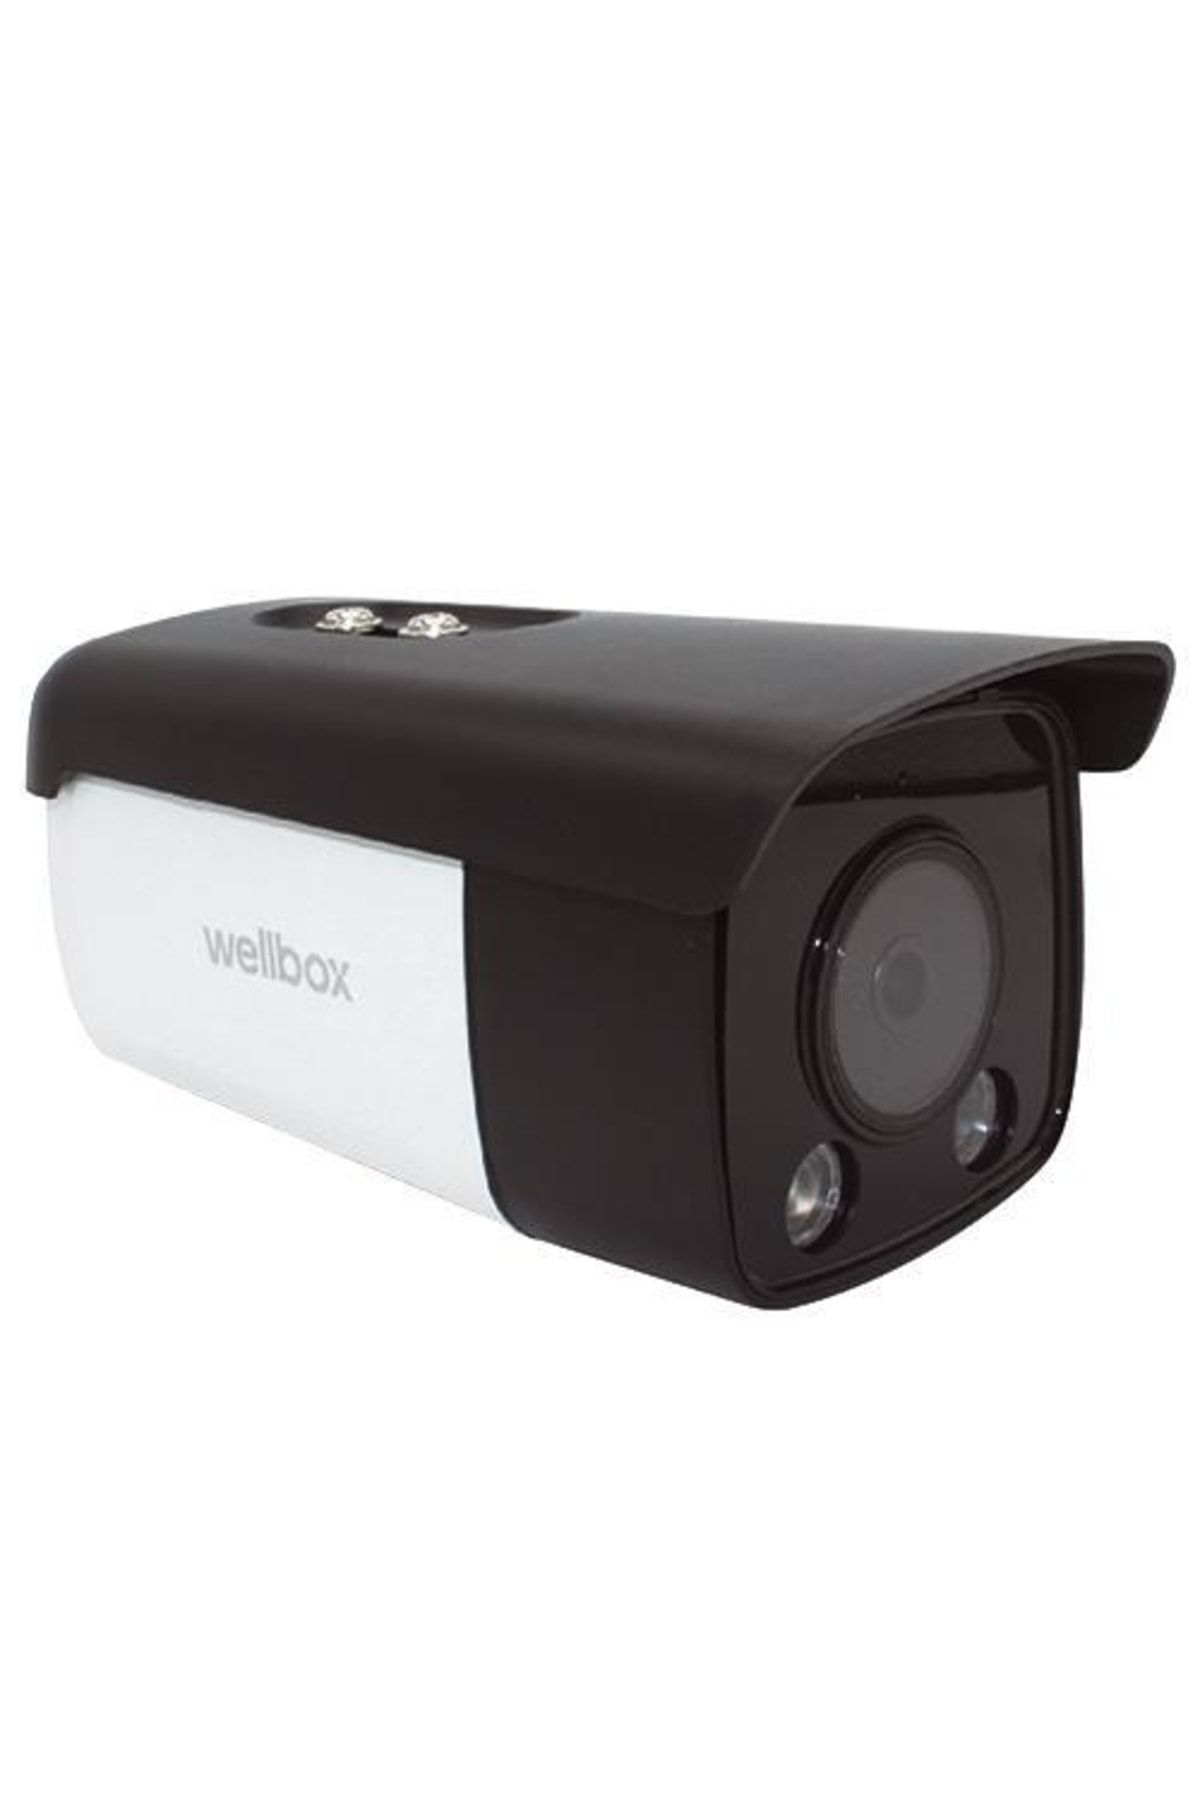 wellbox 2mp Ahd Bullet Kamera Wm-b3100-str